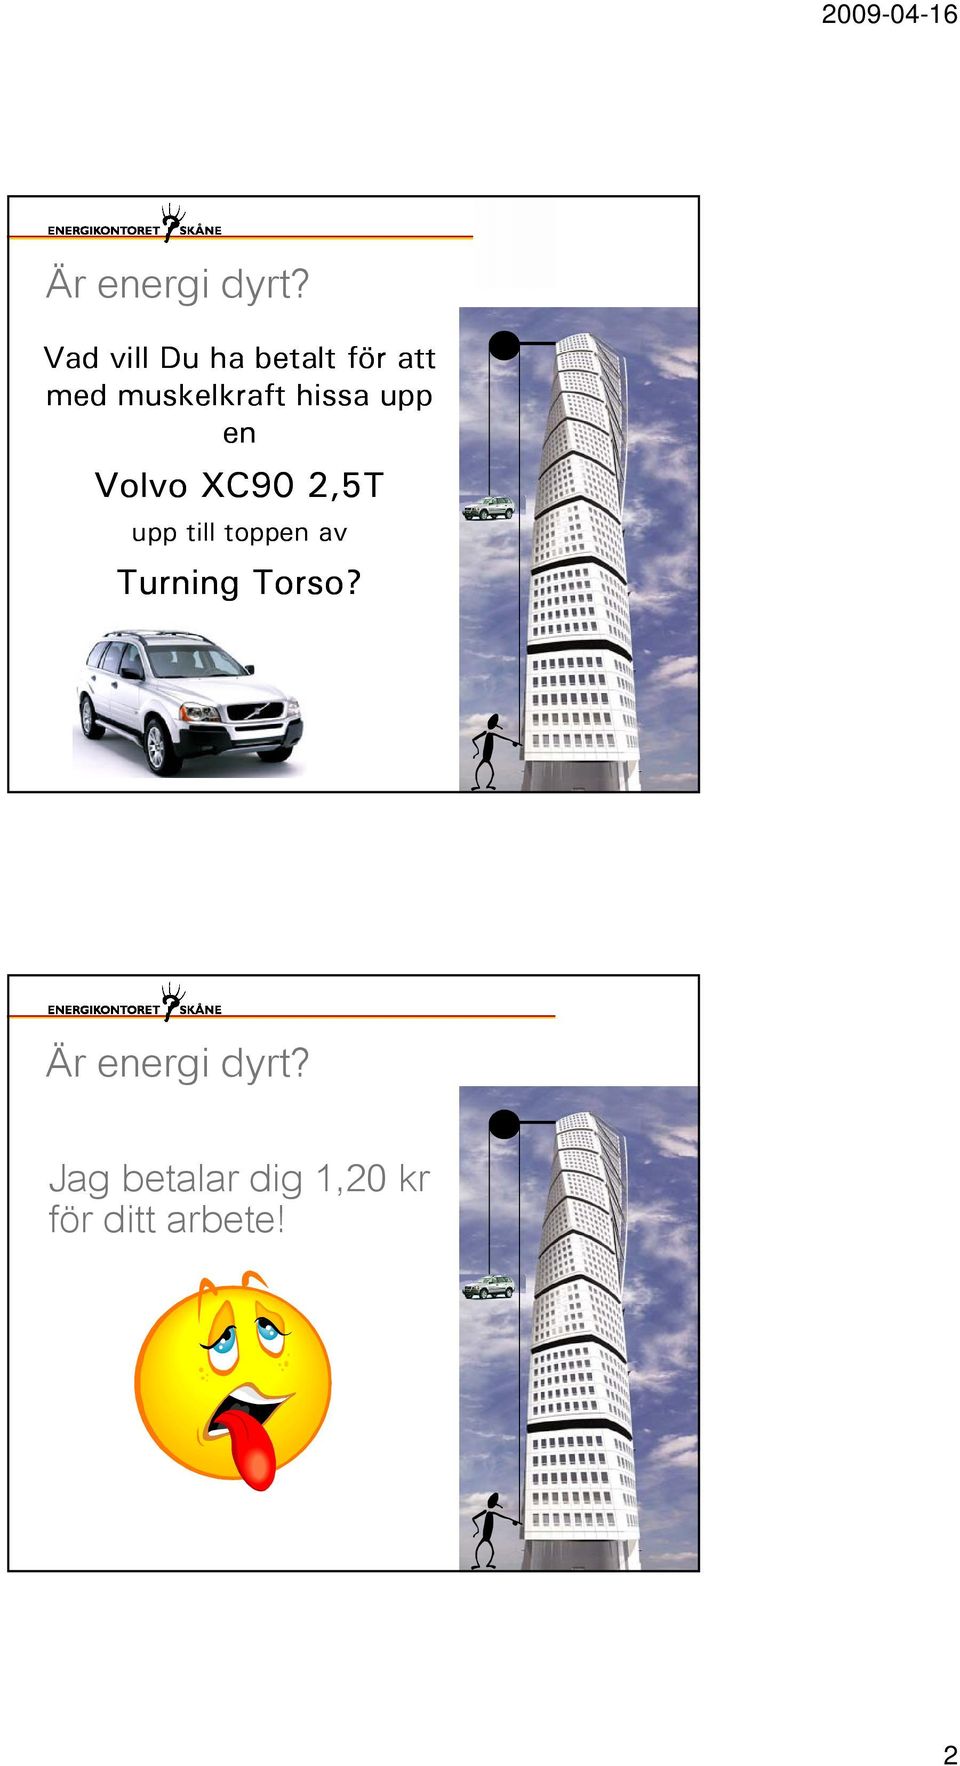 hissa upp en Volvo XC90 2,5T upp till toppen